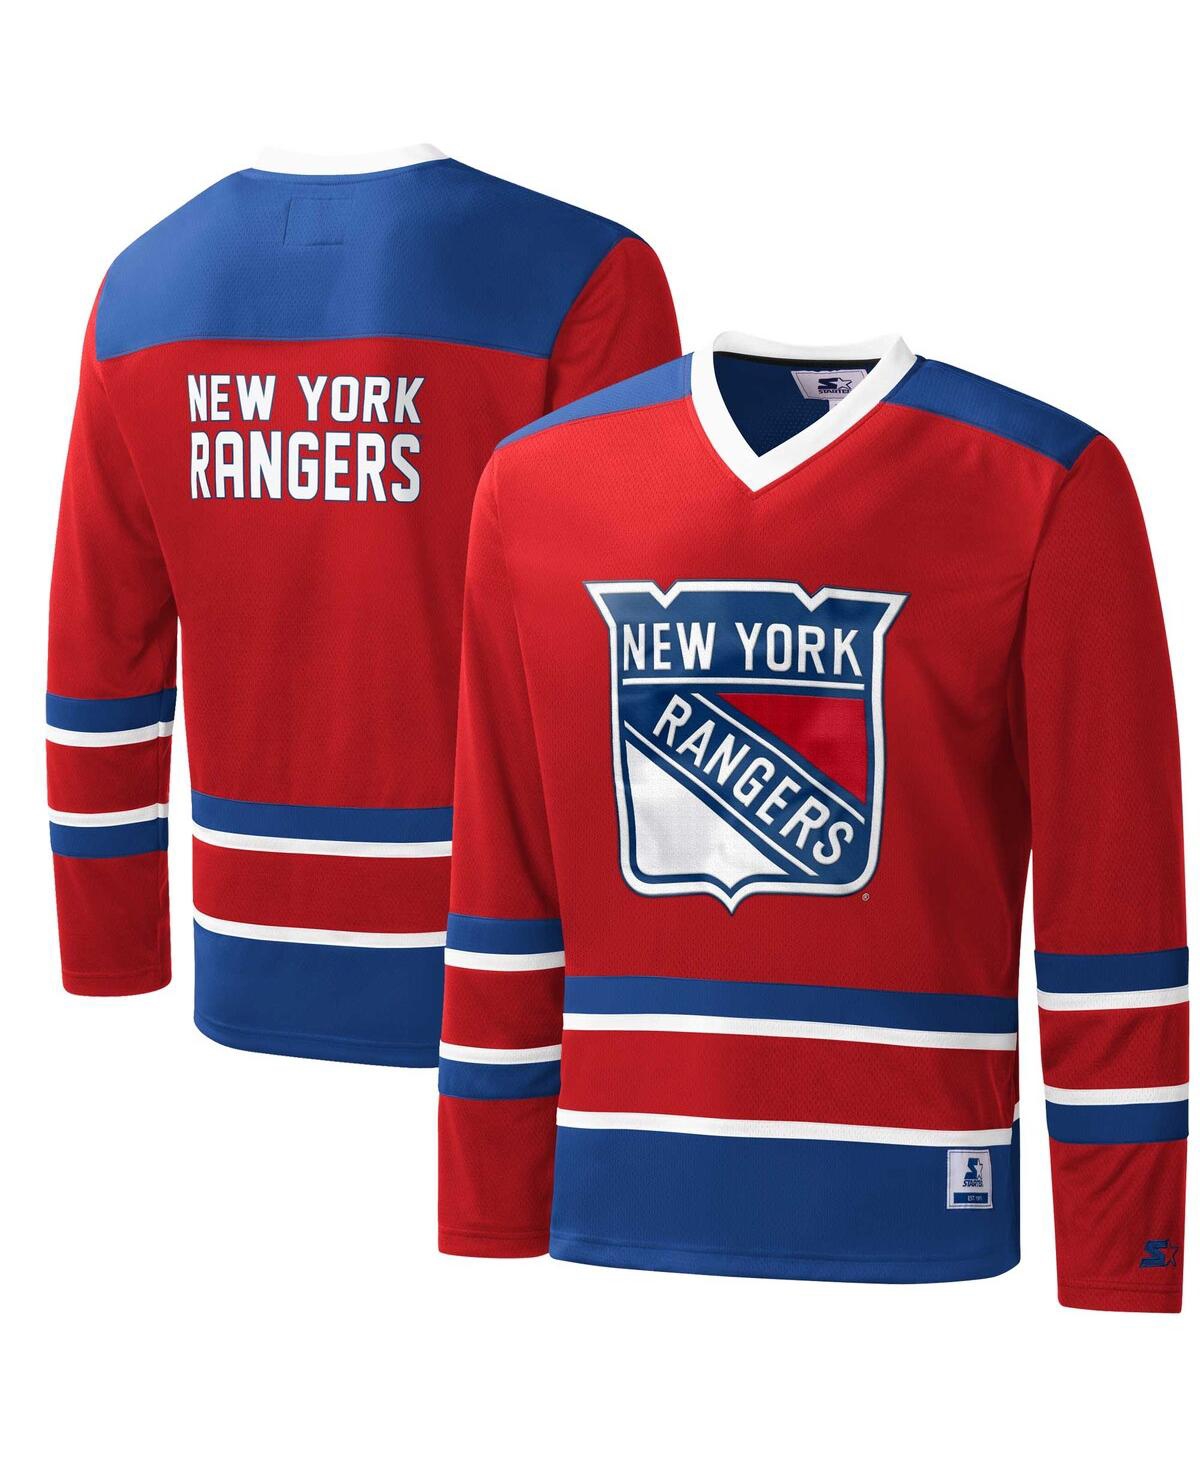 NVL: ReWork Embroidered Logo New York Rangers Starter Jersey (M